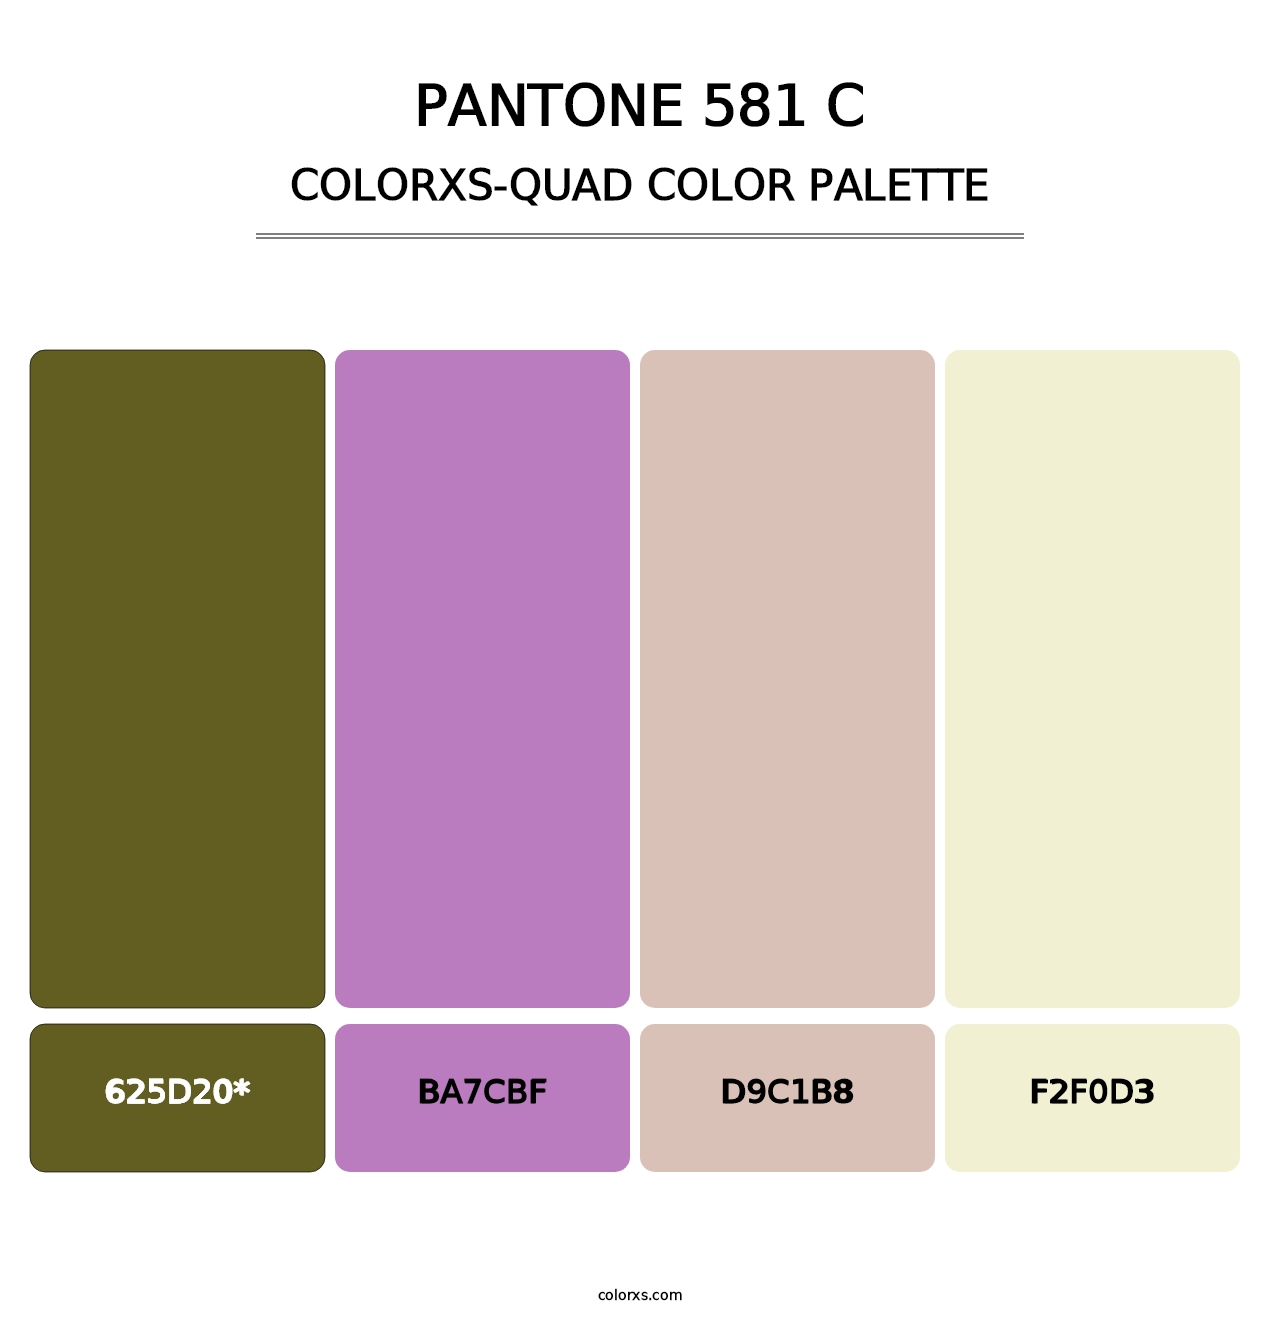 PANTONE 581 C - Colorxs Quad Palette